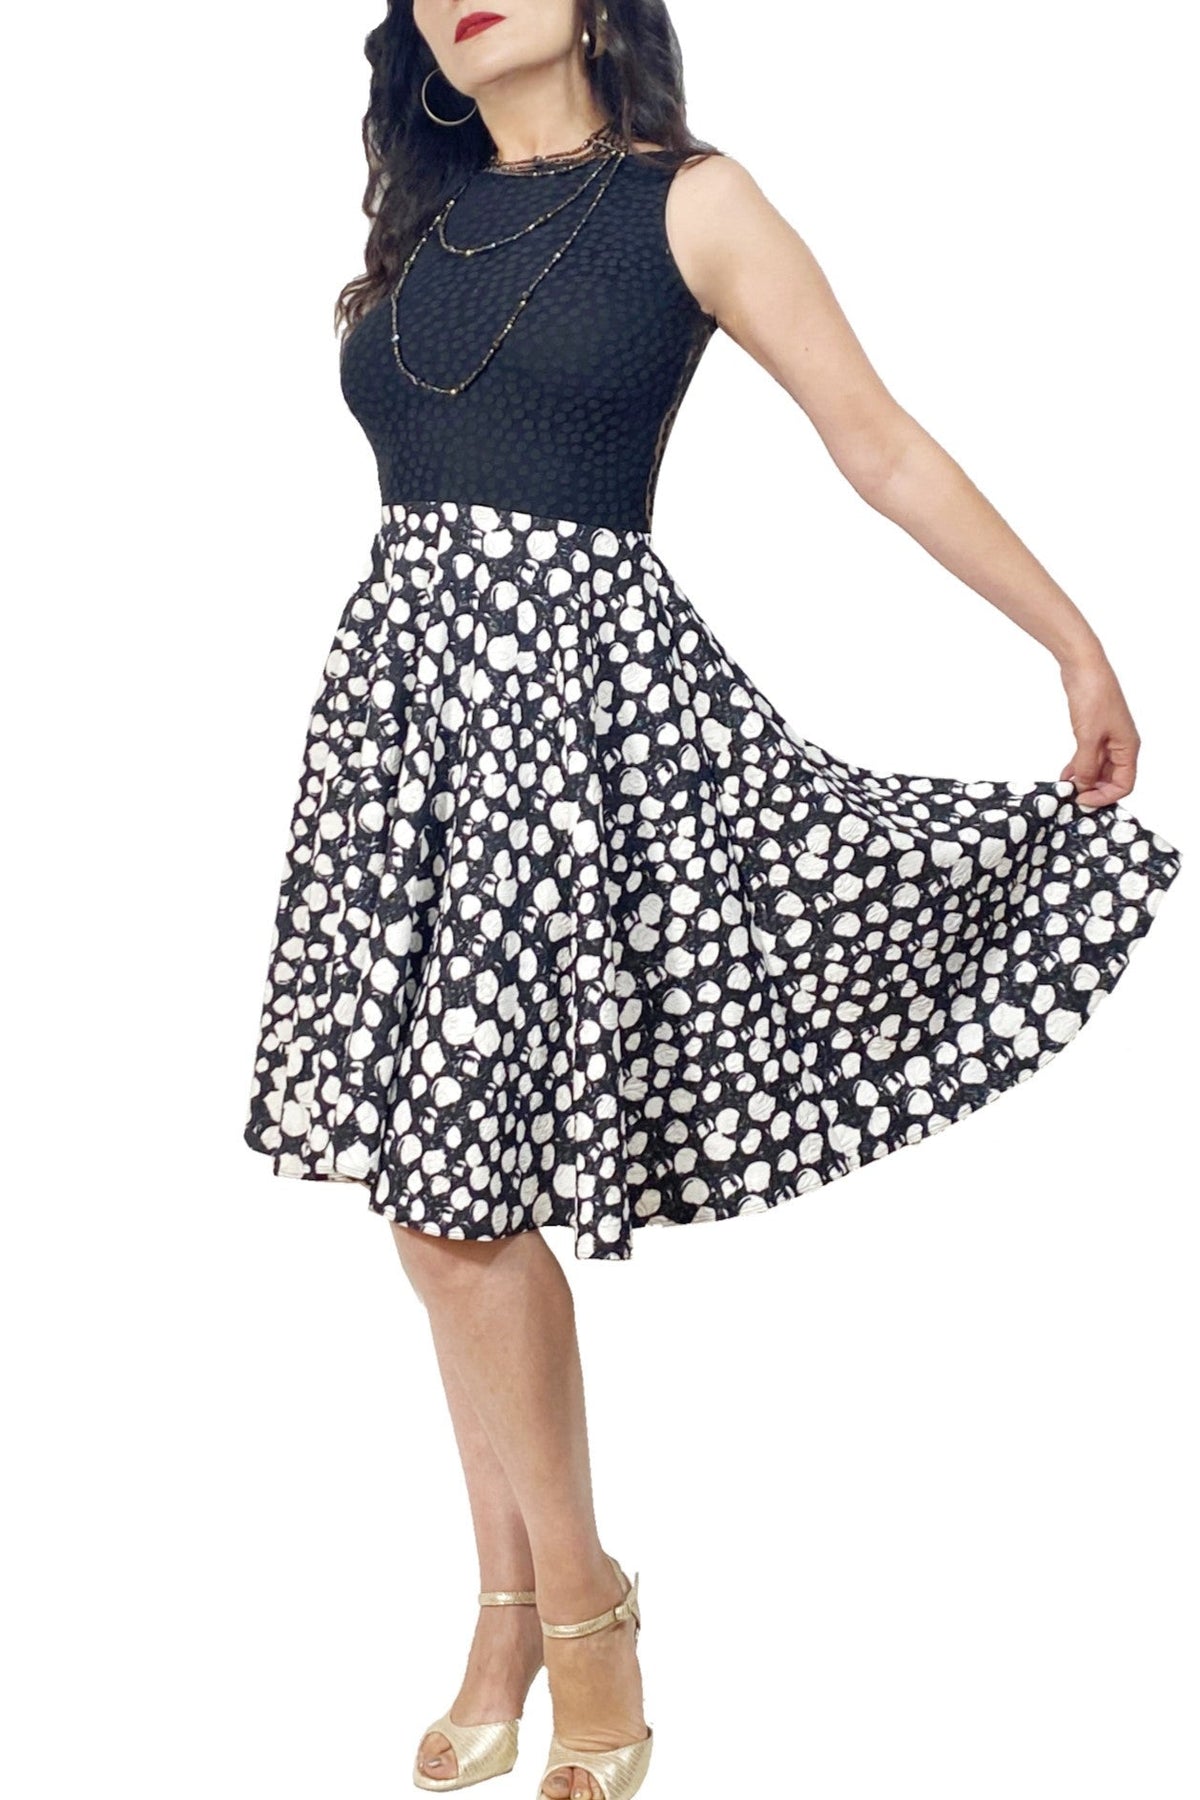 black & white lace-back tango dress with full skirt - Atelier Vertex